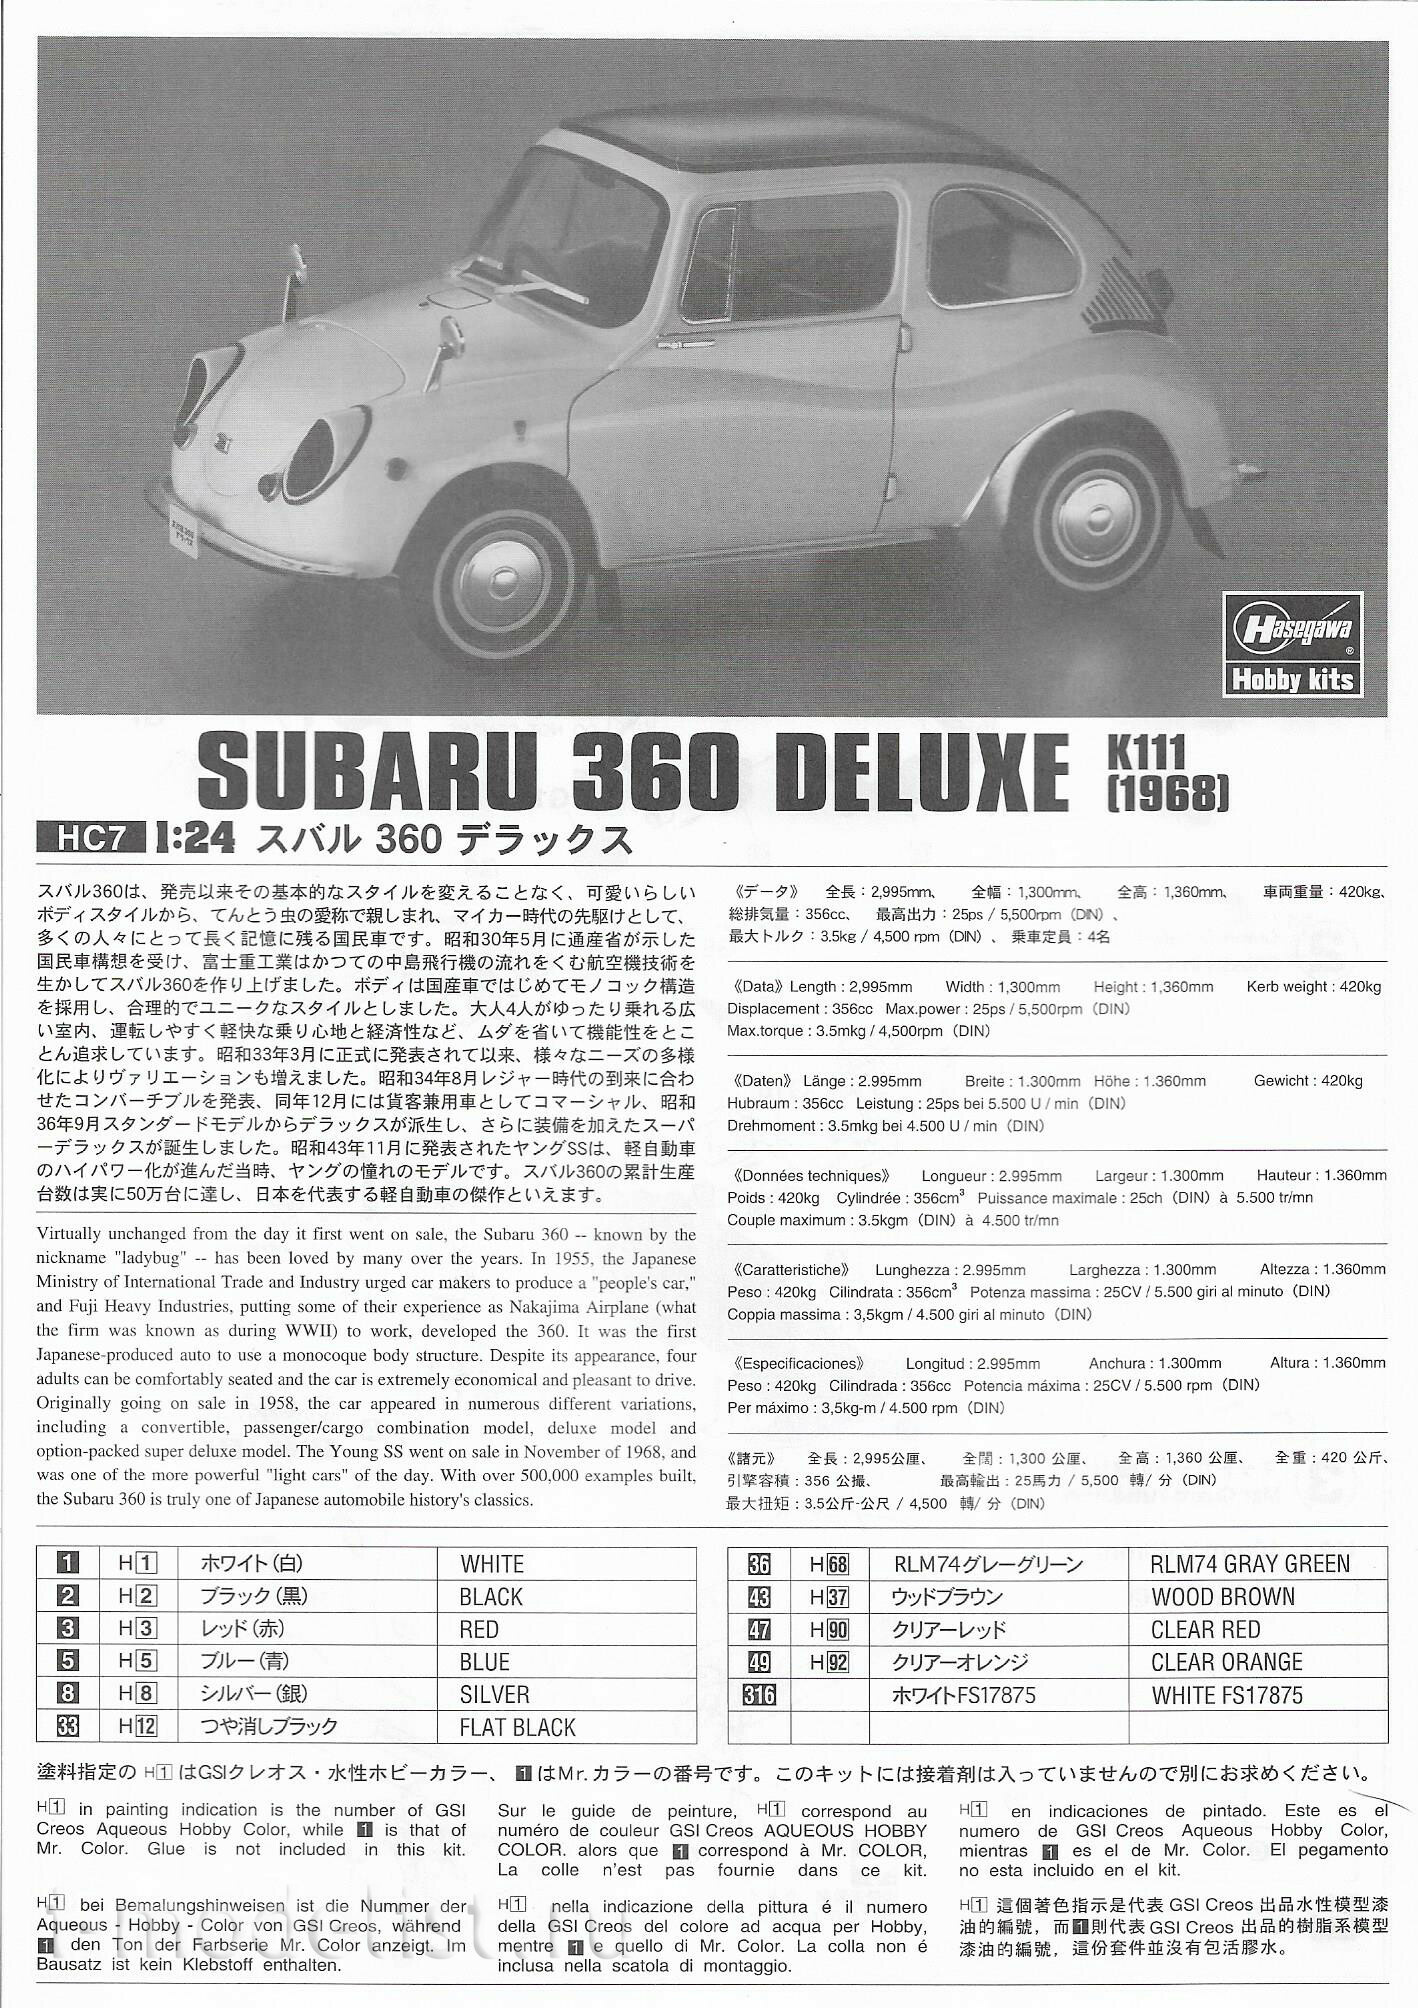 21207 Hasegawa 1/24 Subaru 360 Deluxe 